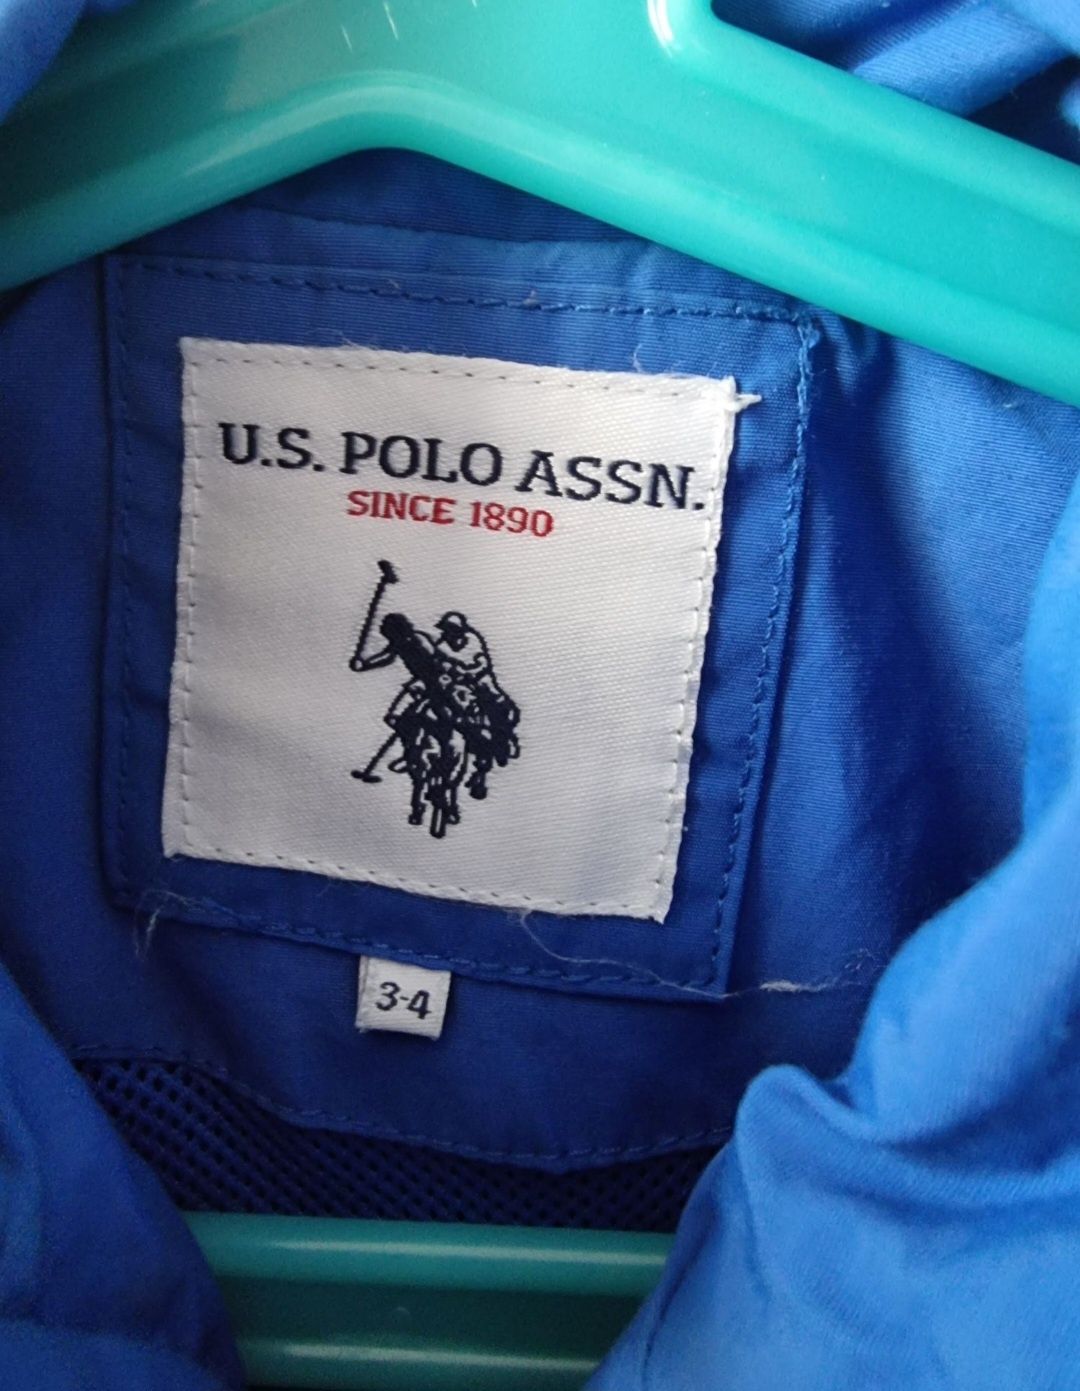 Sprzedam przejściową  kurtkę U.S. Polo ASSN.
Zapraszam do zakupu.
Stan